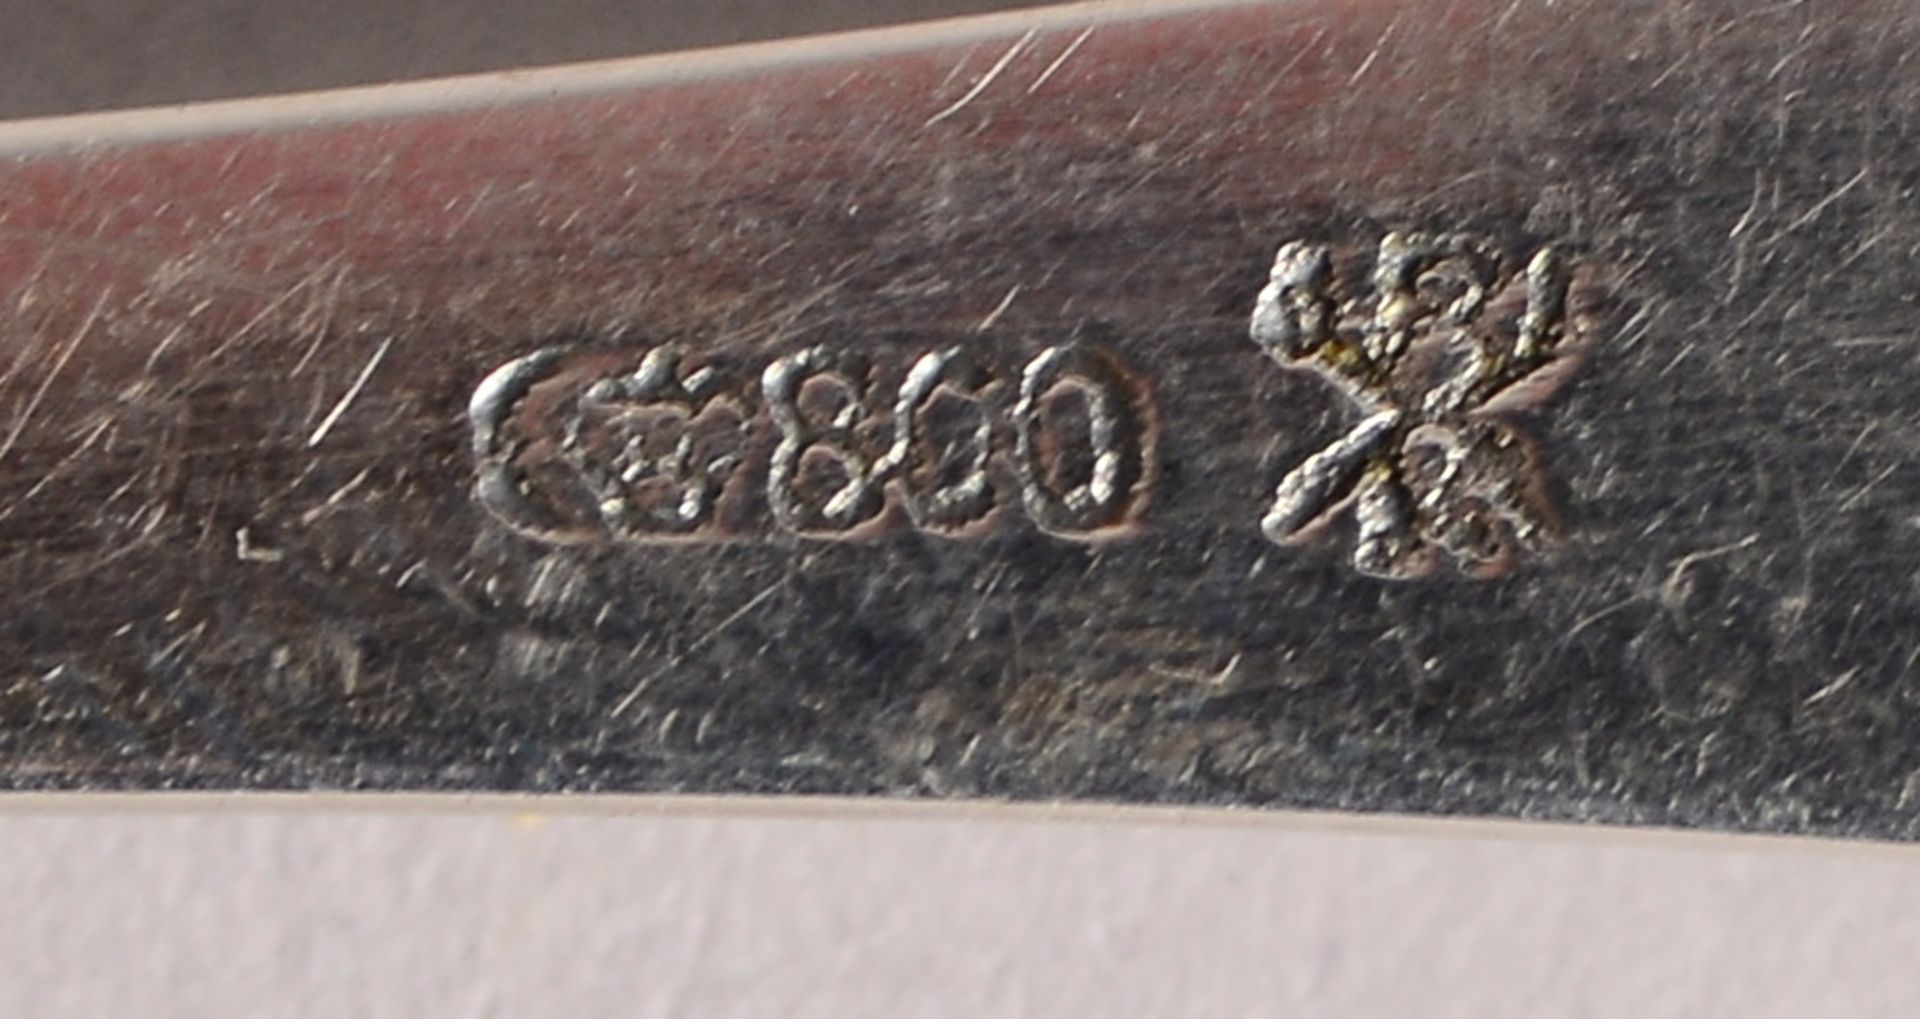 Fischbesteck, 800 Silber (mit Manufakturmarke), für 6 Pers.; Gewicht 535 g - Bild 2 aus 2